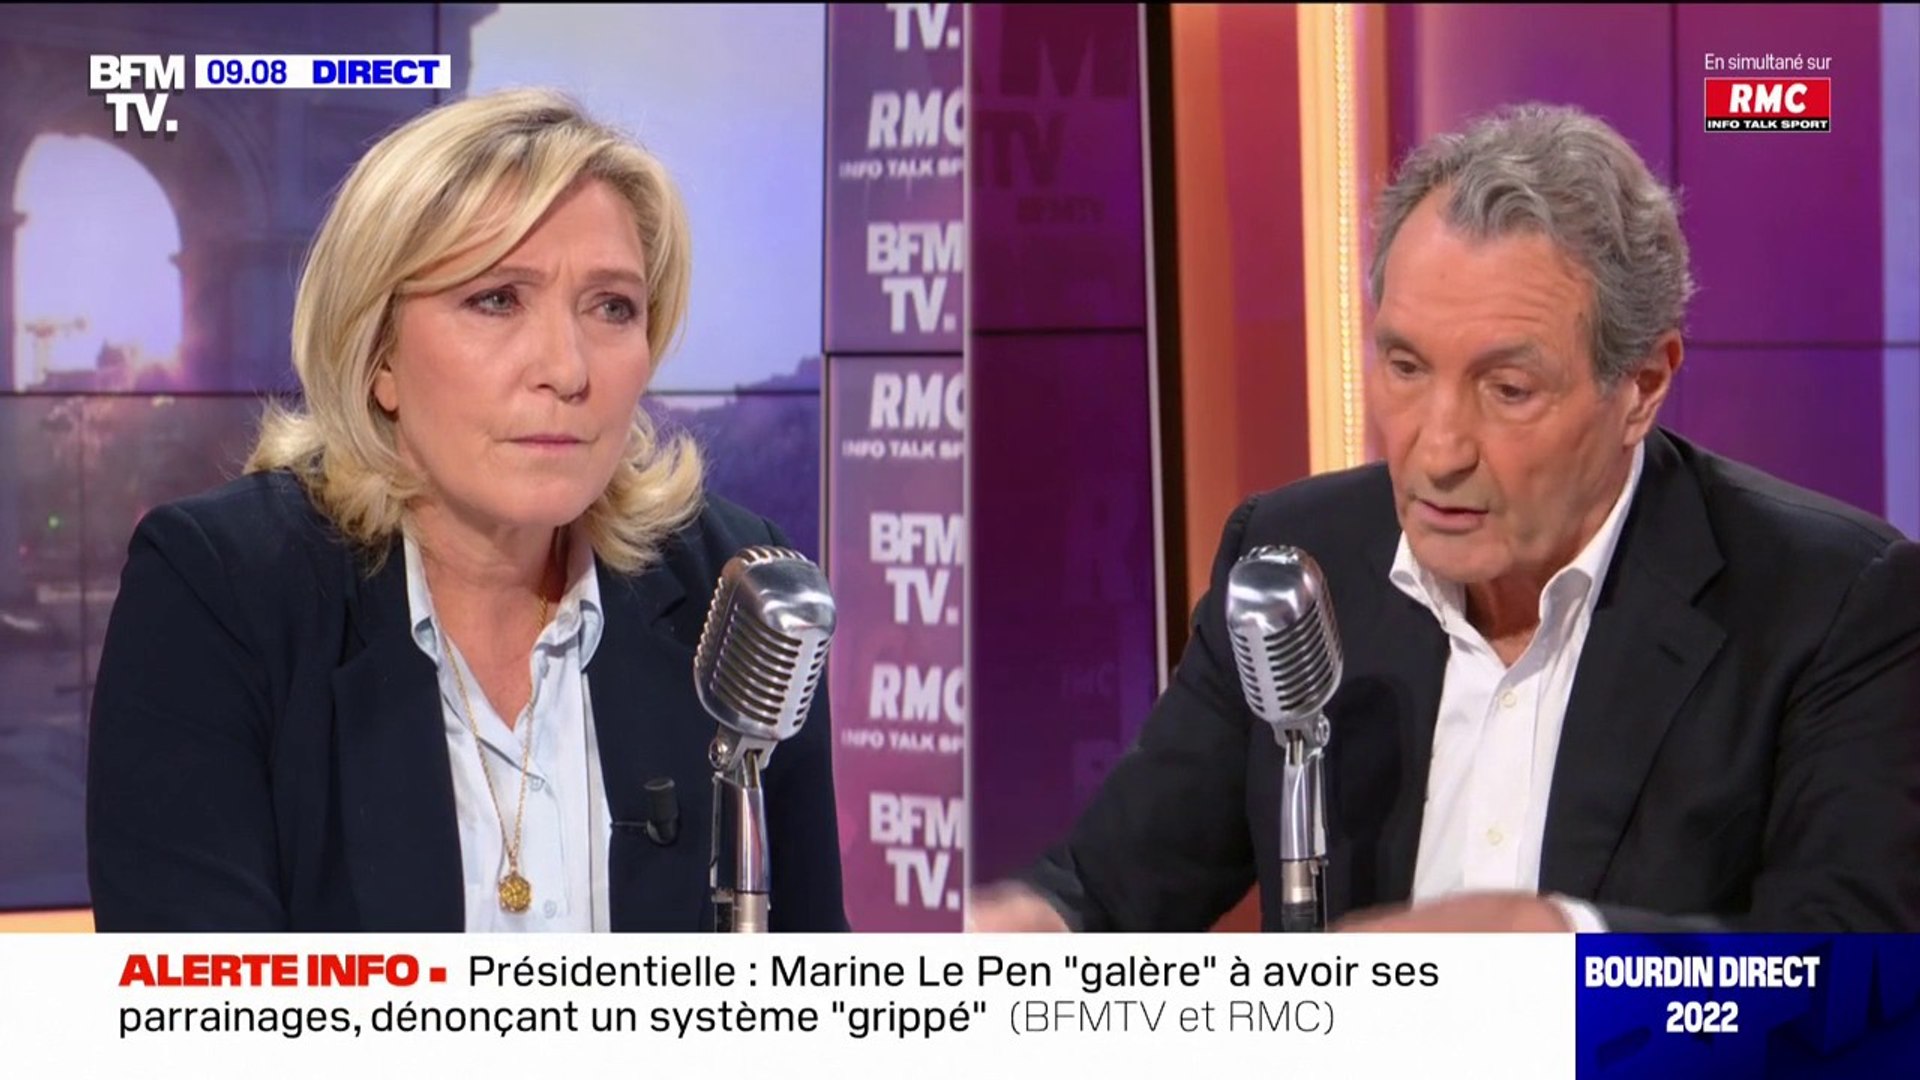 Marine Le Pen assure que "les allocations familiales seront réservées  exclusivement aux Français" si elle est élue en 2022 - Vidéo Dailymotion